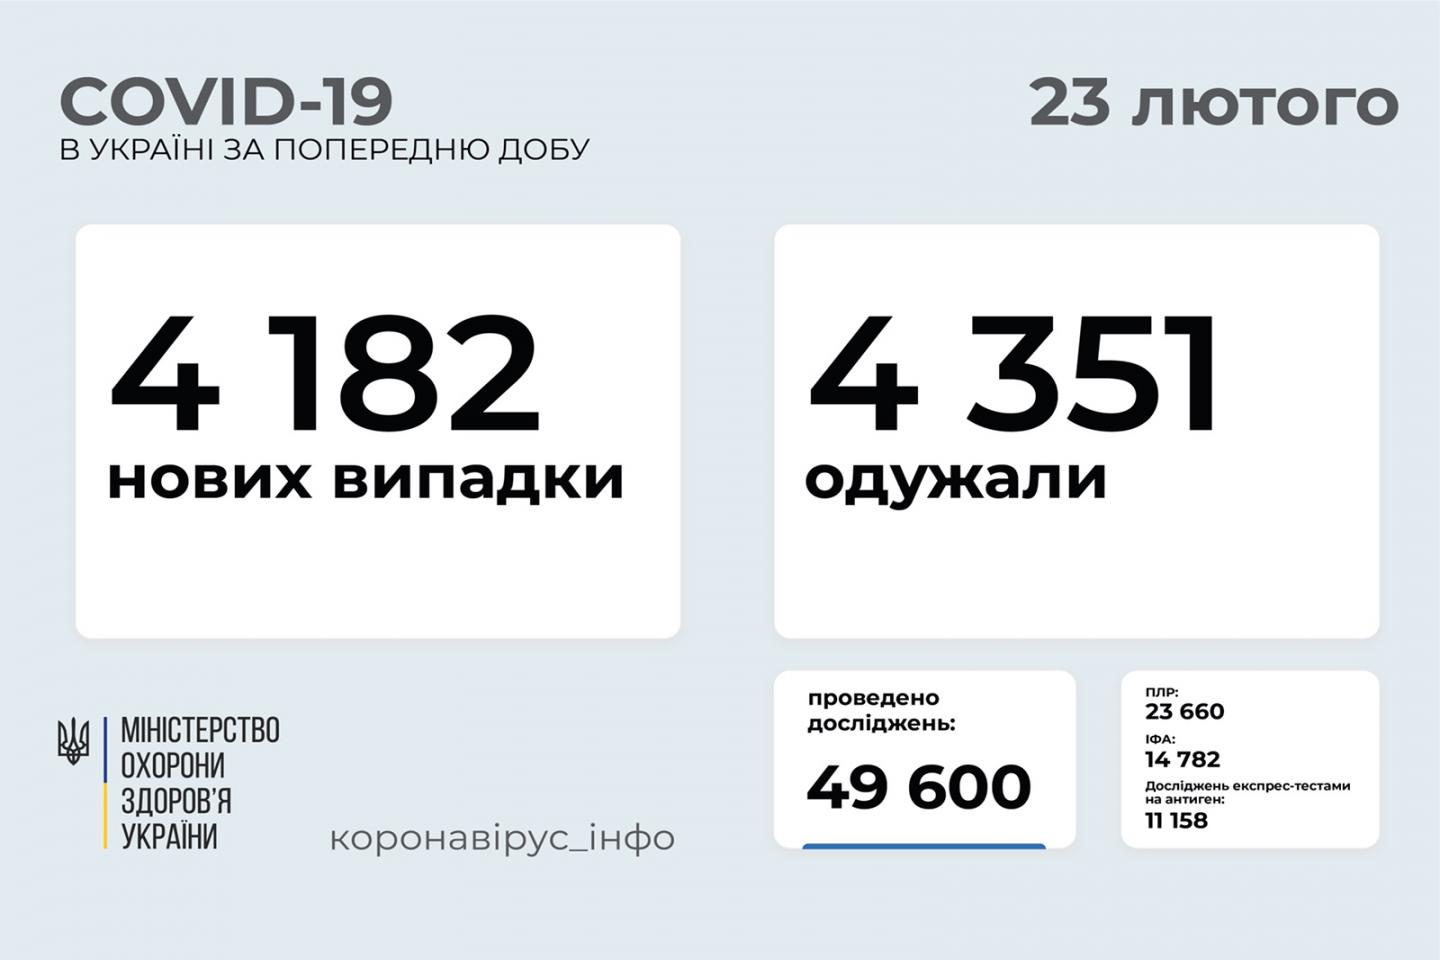 http://dunrada.gov.ua/uploadfile/archive_news/2021/02/23/2021-02-23_3501/images/images-50645.jpg